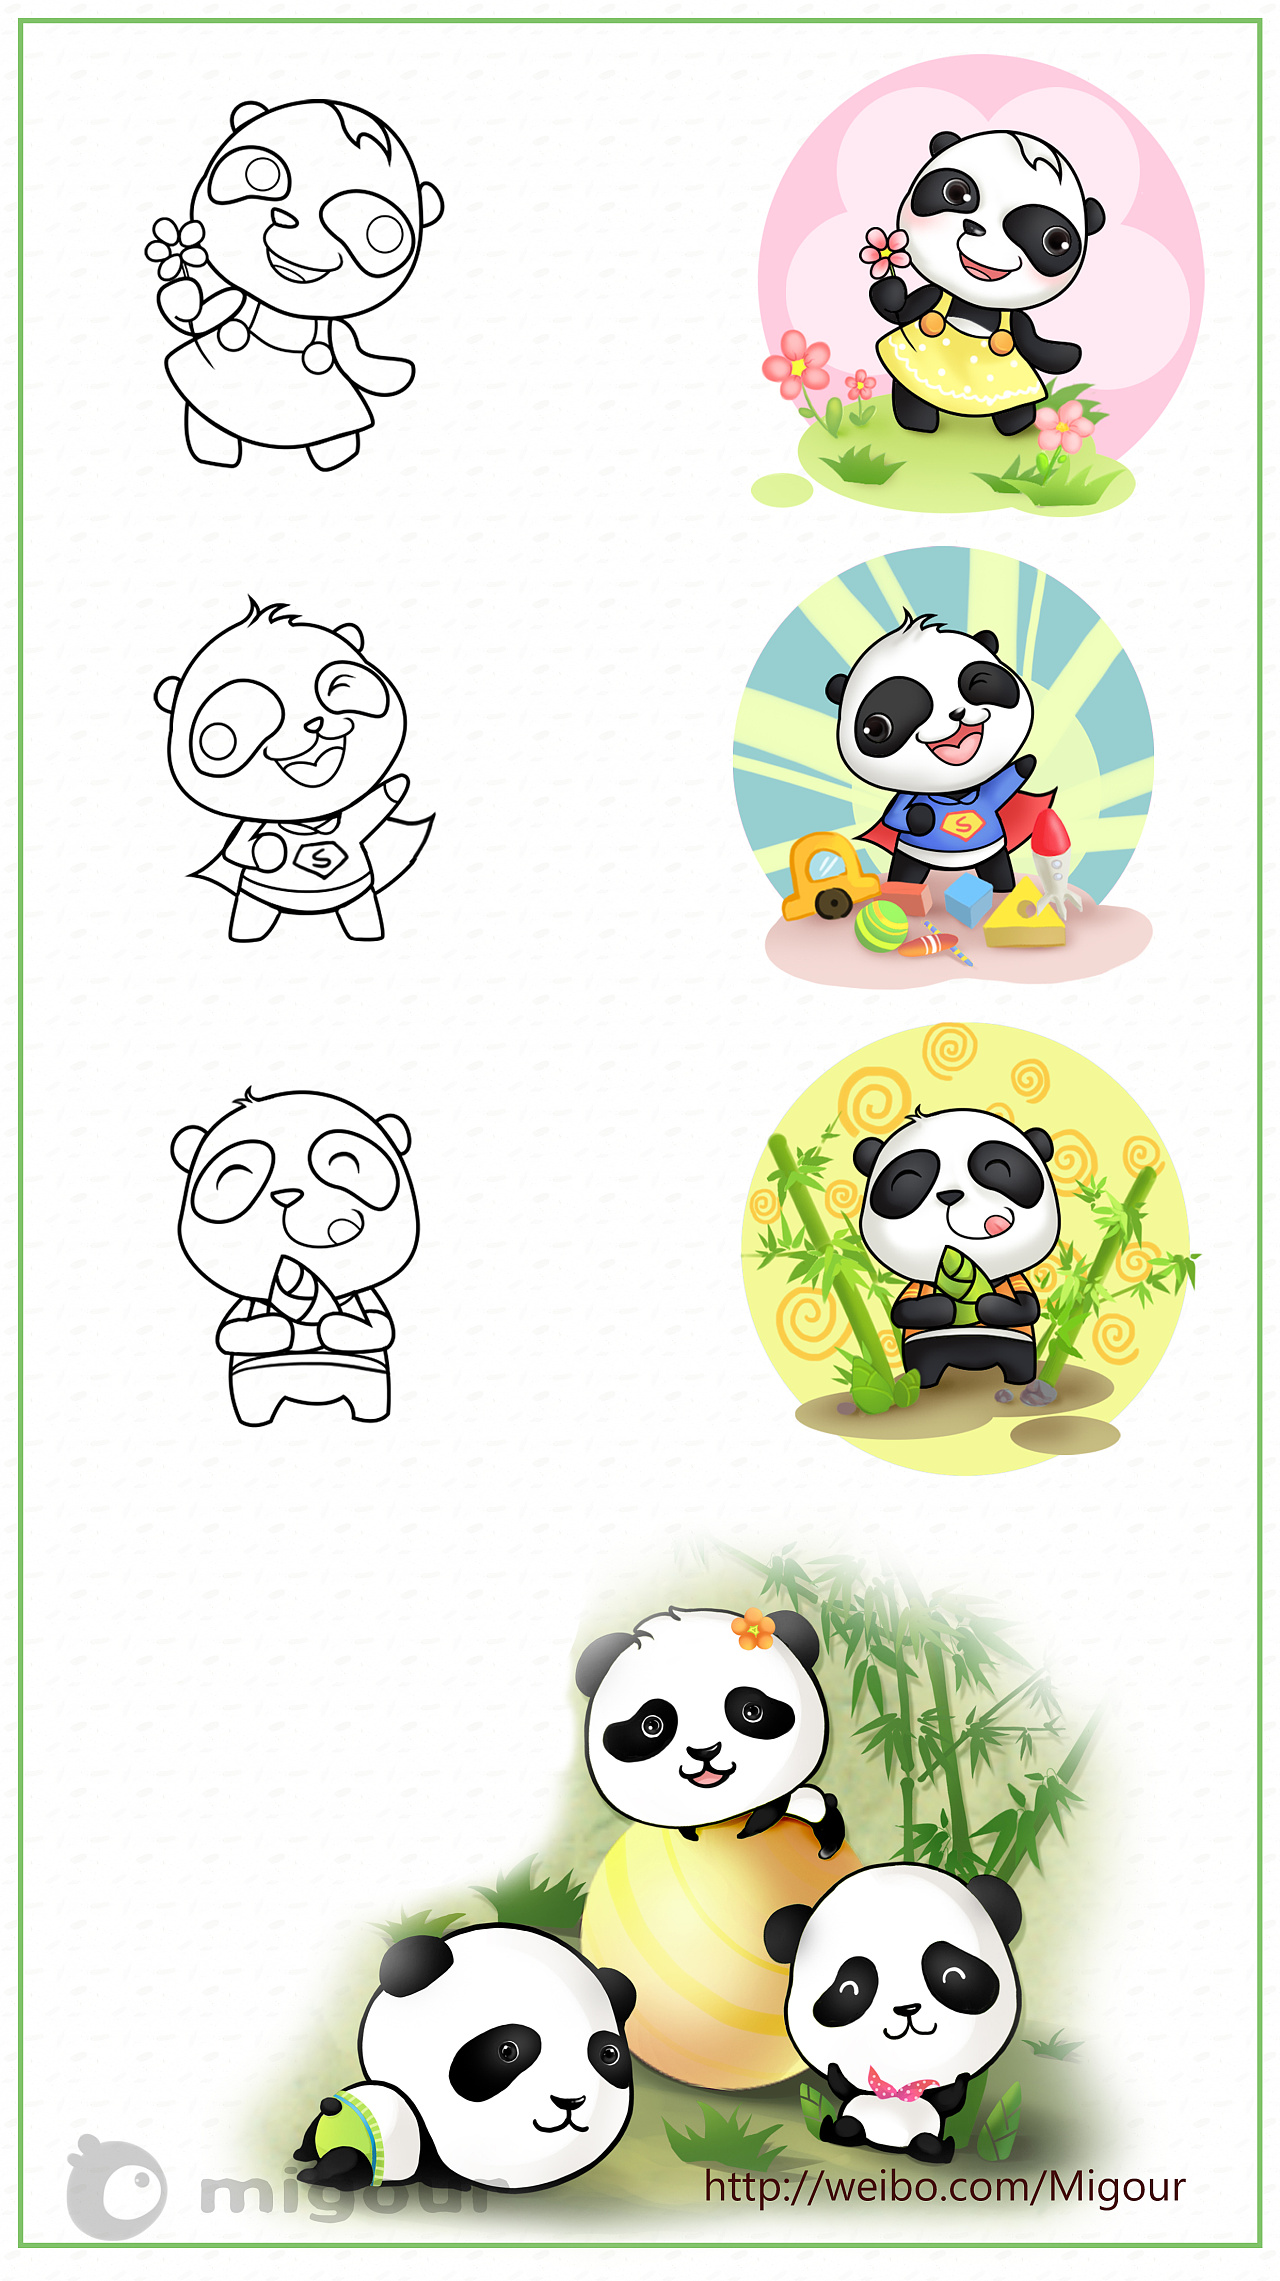 之前做的动物园熊猫吉祥物